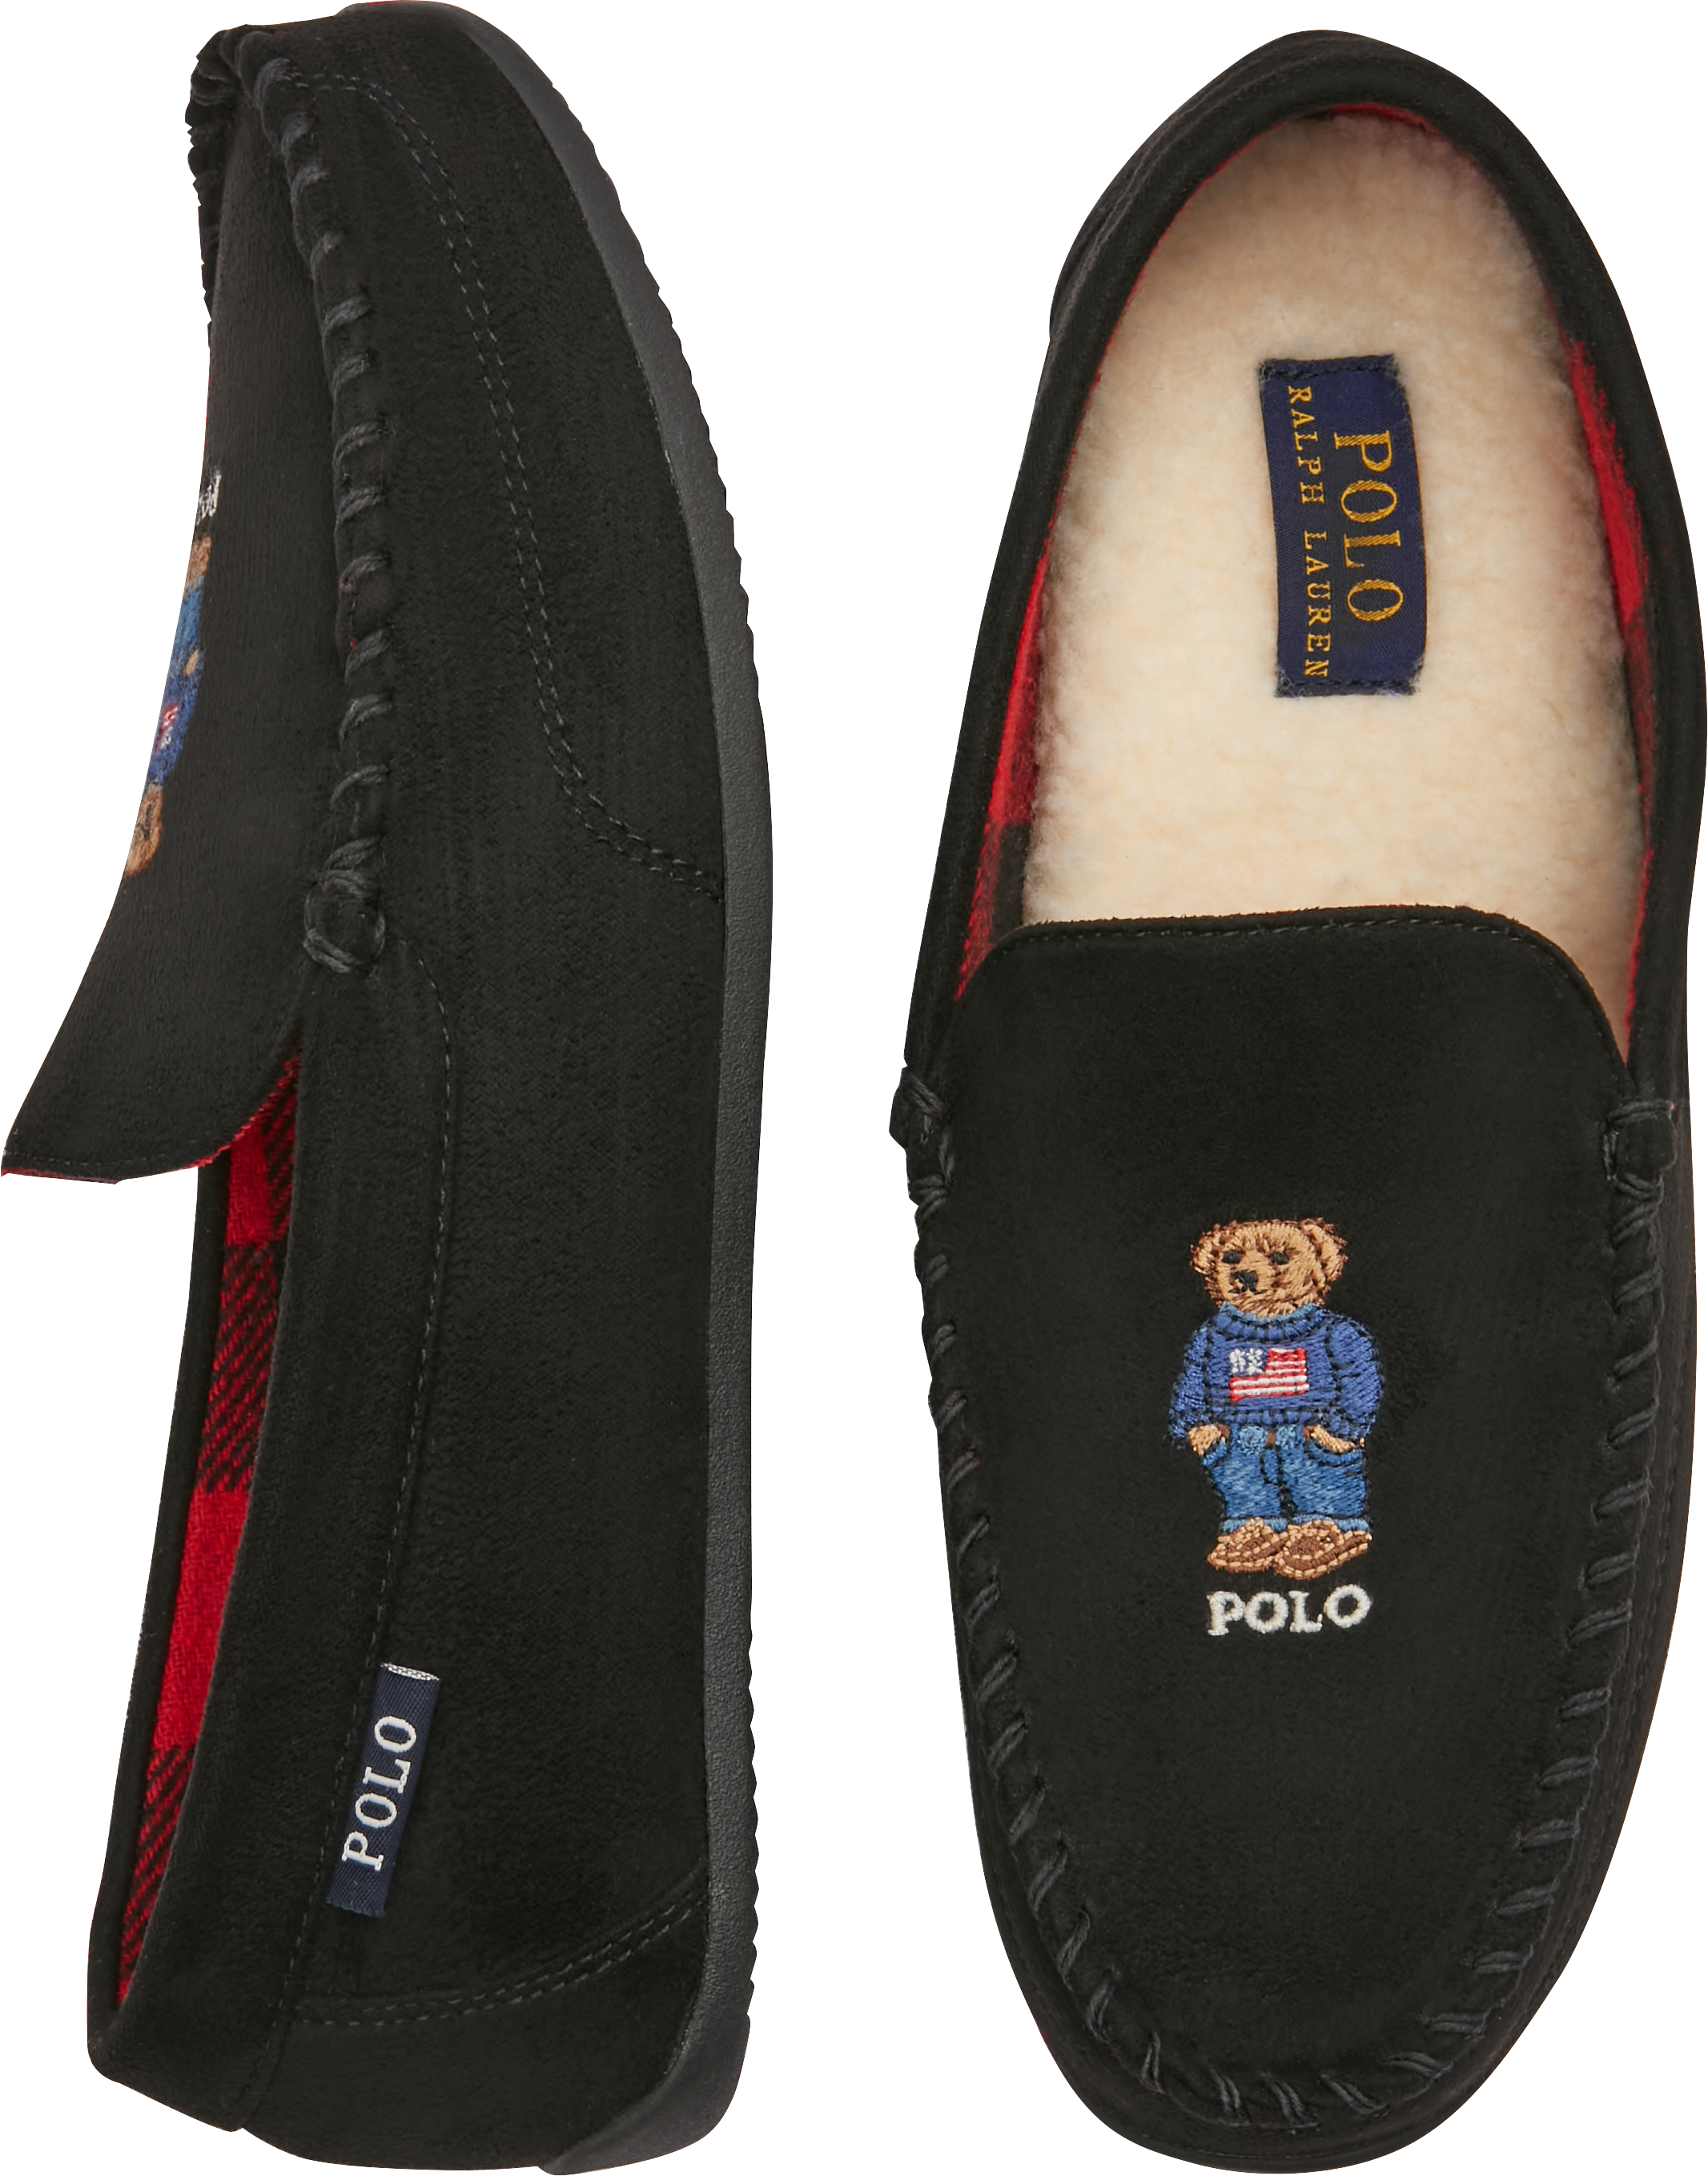 Polo Ralph Lauren Americana Bear Slippers - Men's Shoes | Men's Wearhouse